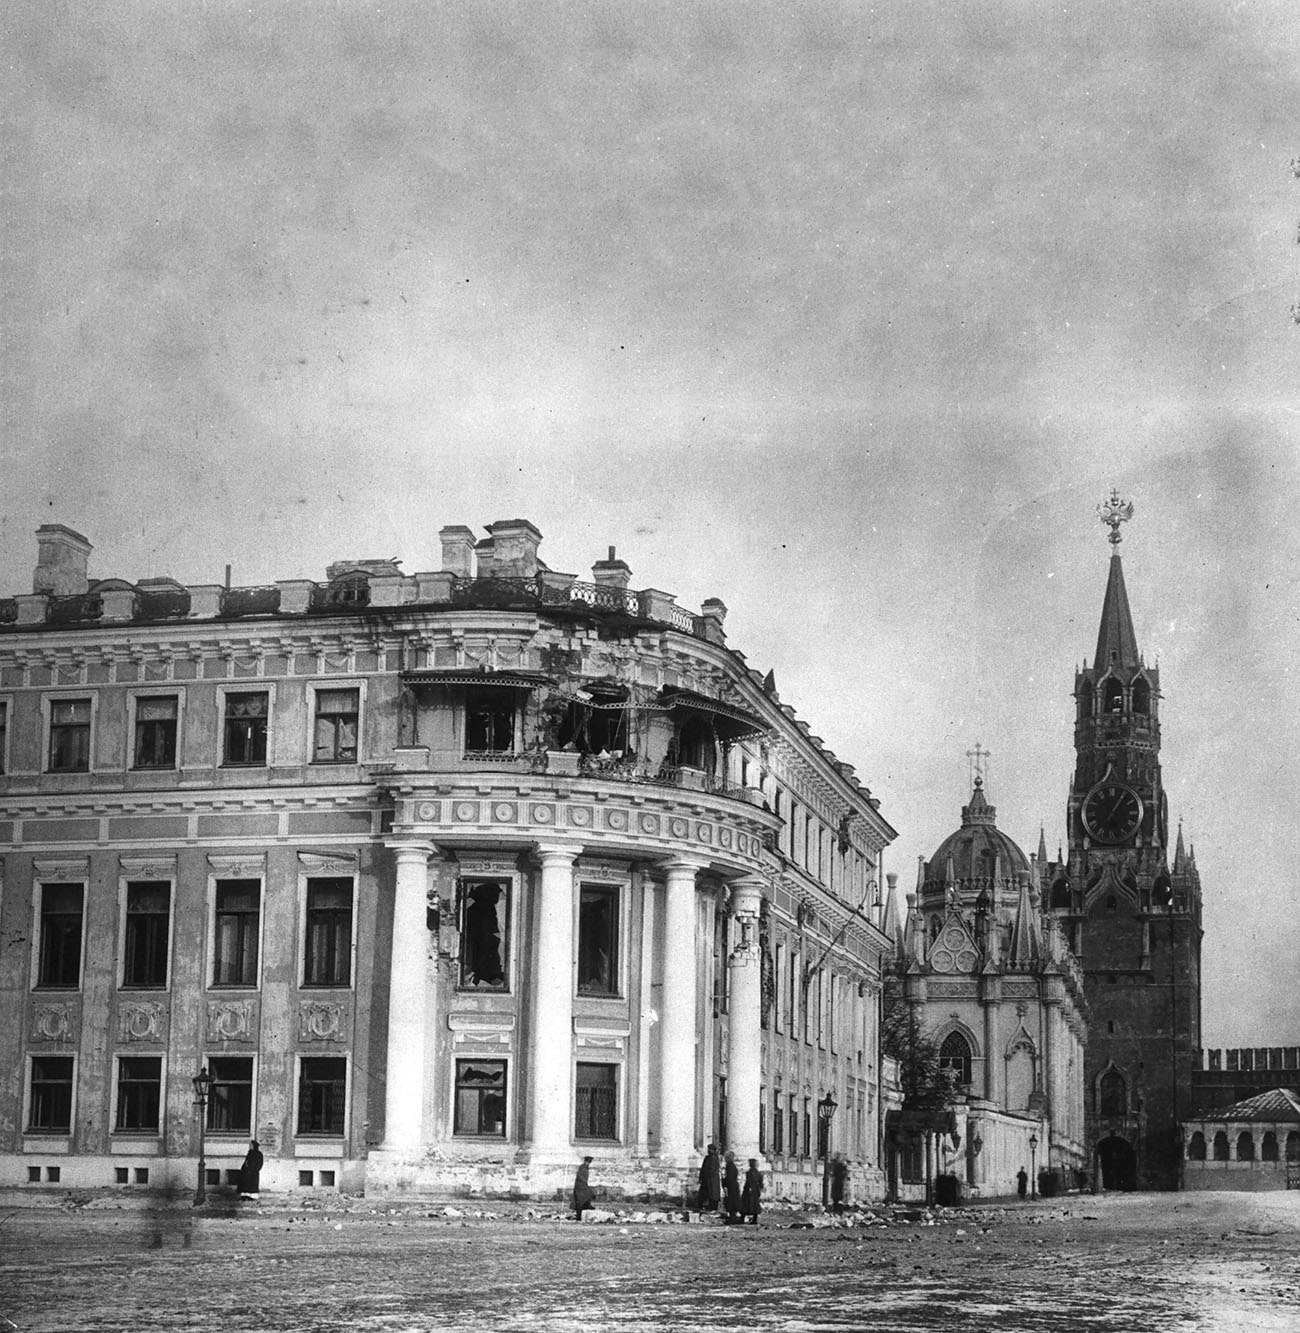 Разбитый Малый Николаевский дворец. Петроград, 1917 г.